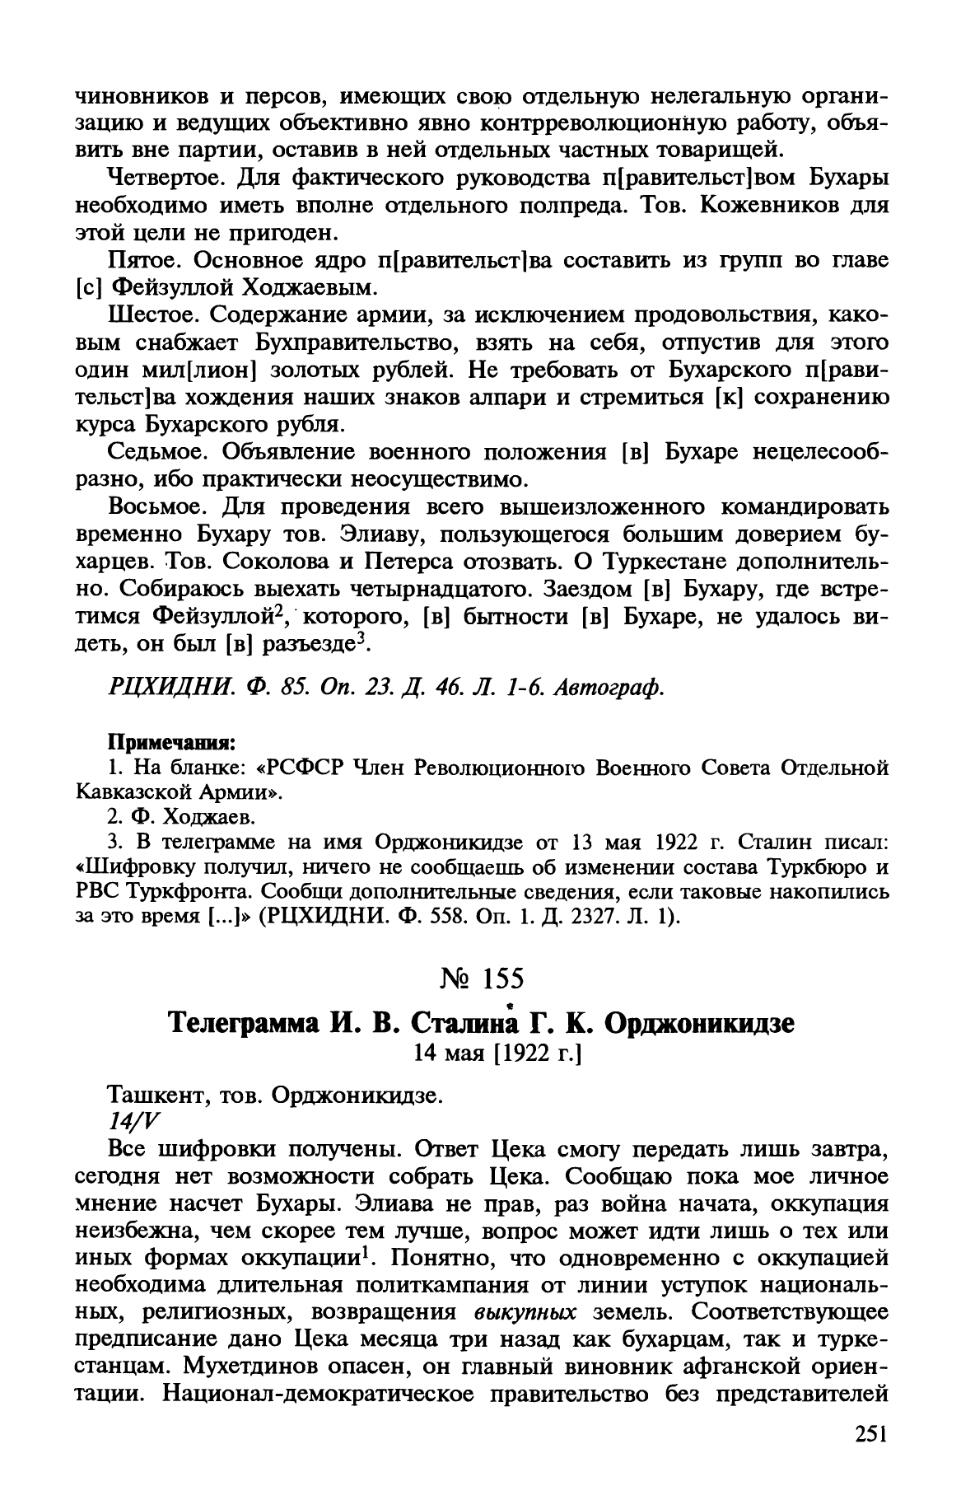 155. Телеграмма И. В. Сталина Г. К. Орджоникидзе. 14 мая [1922 г.]